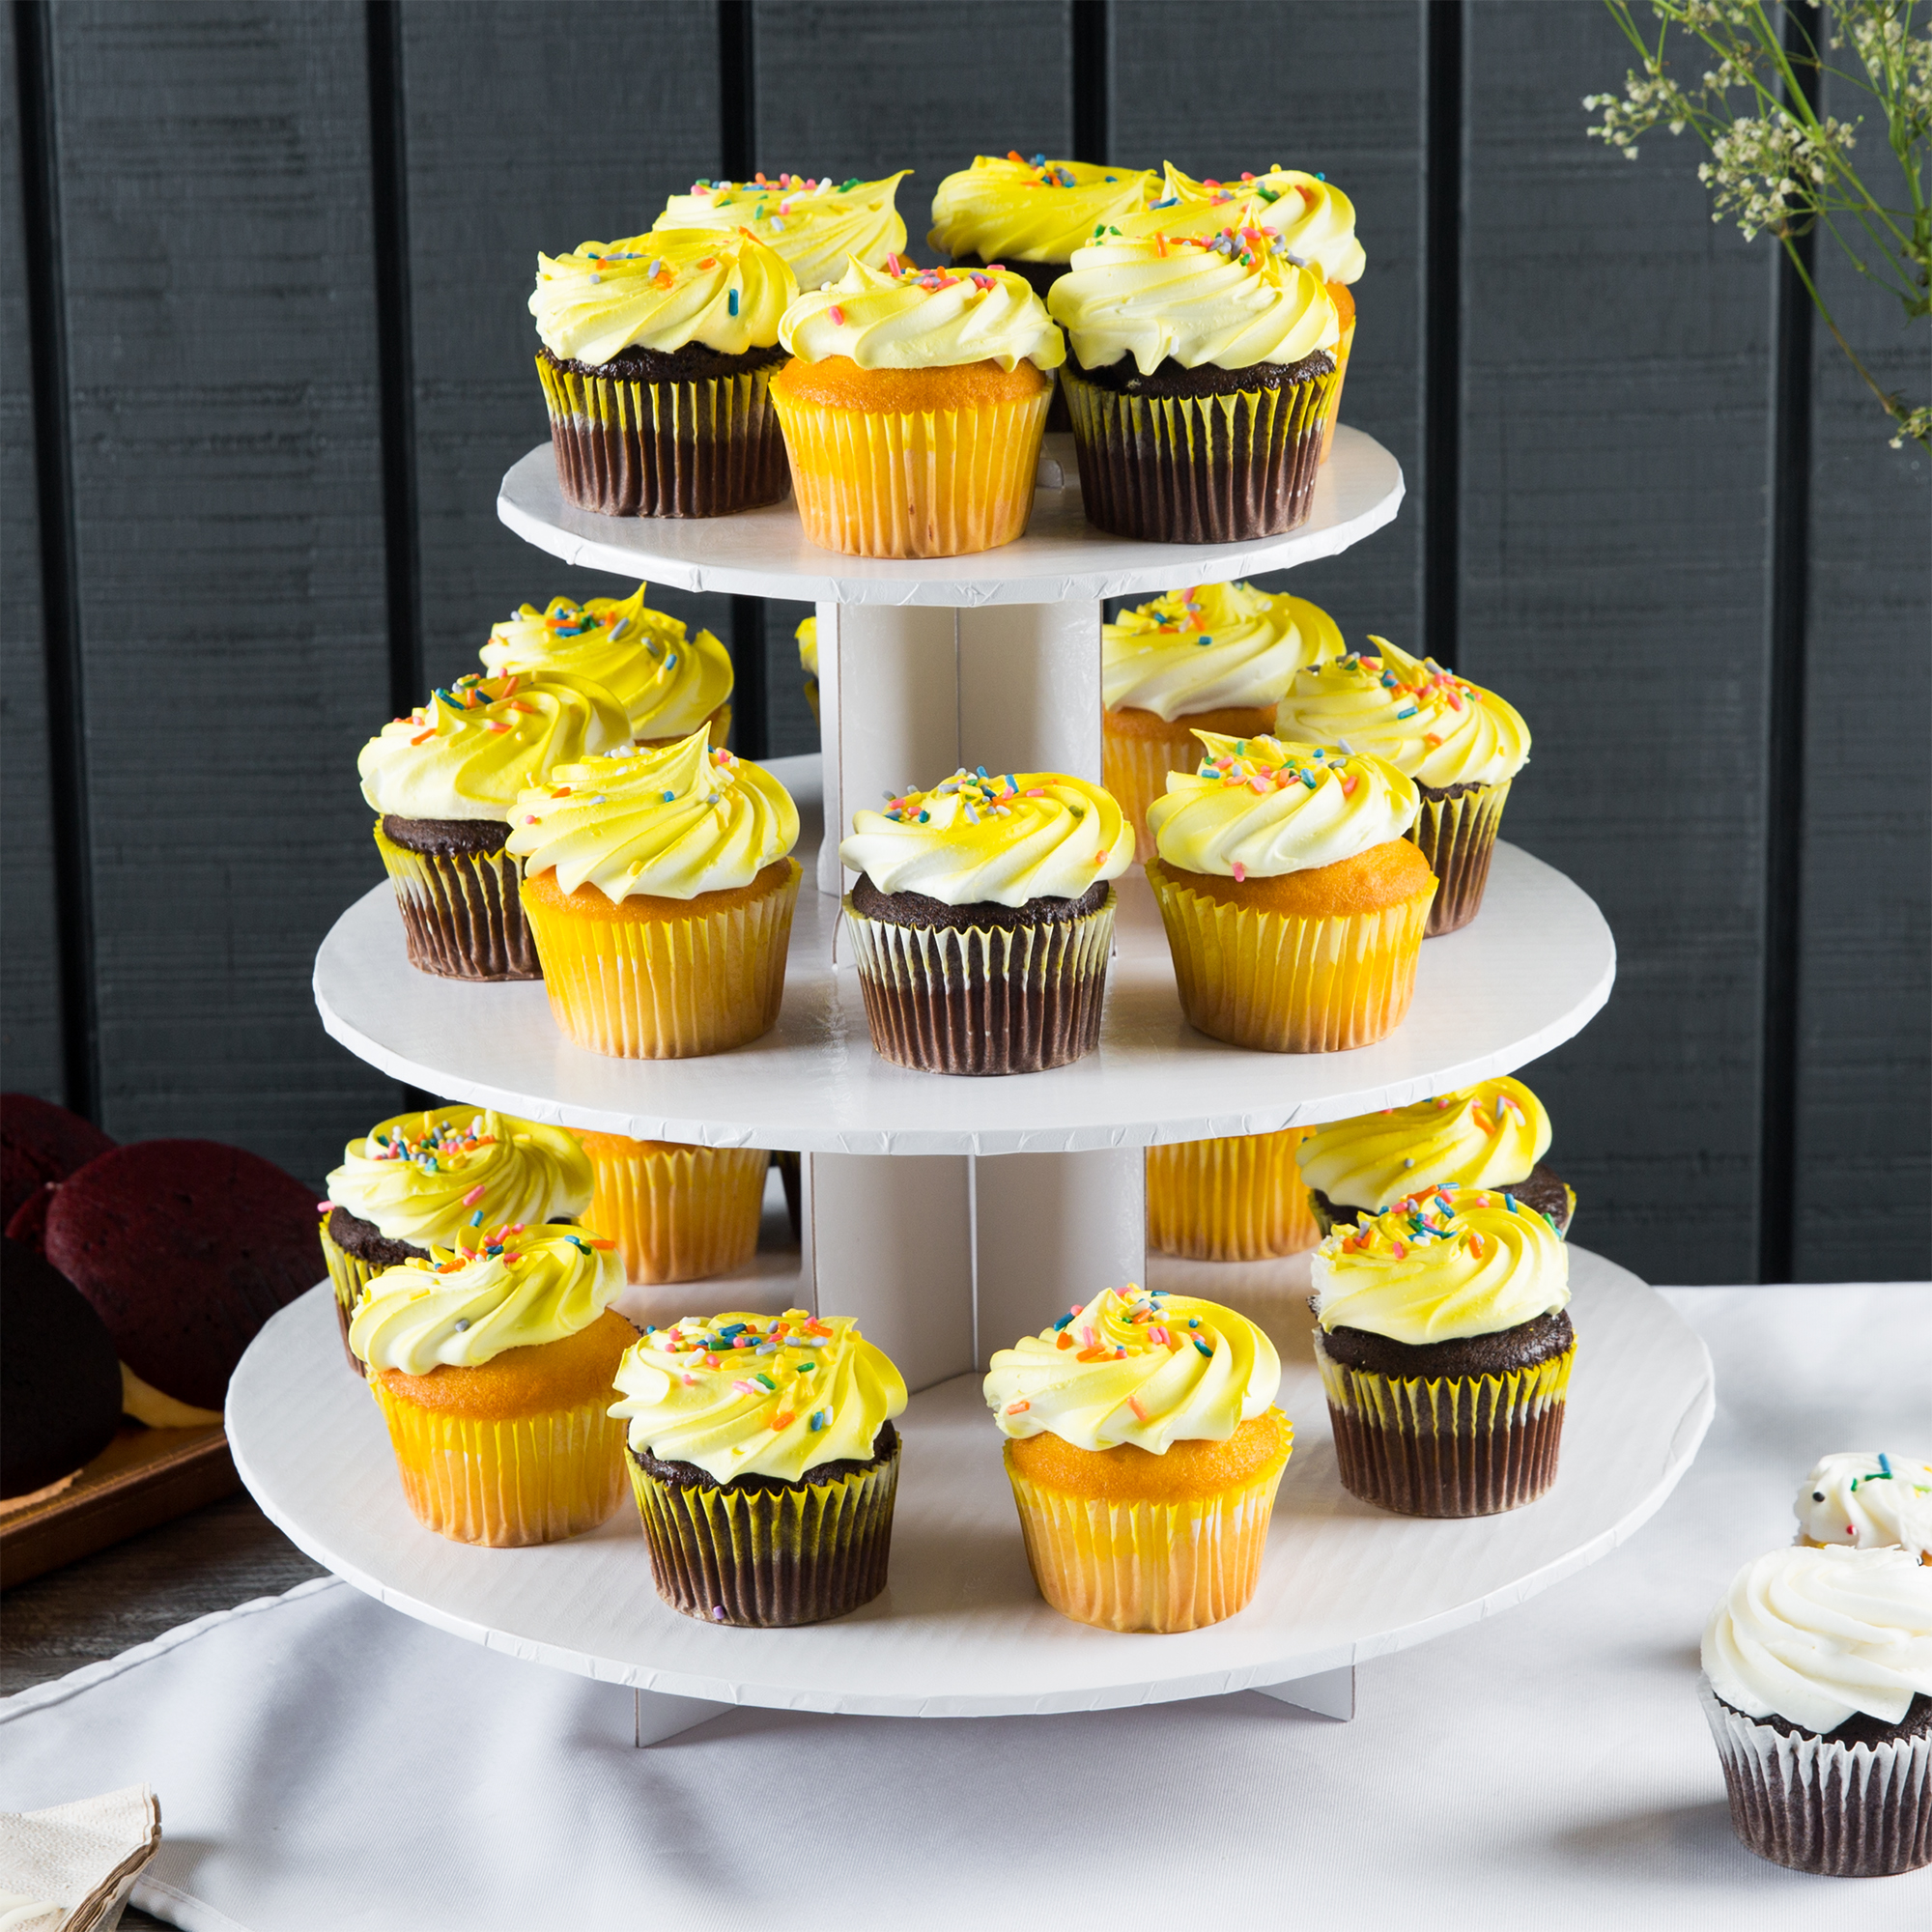 Cupcake Decorating, Baking, & Displays